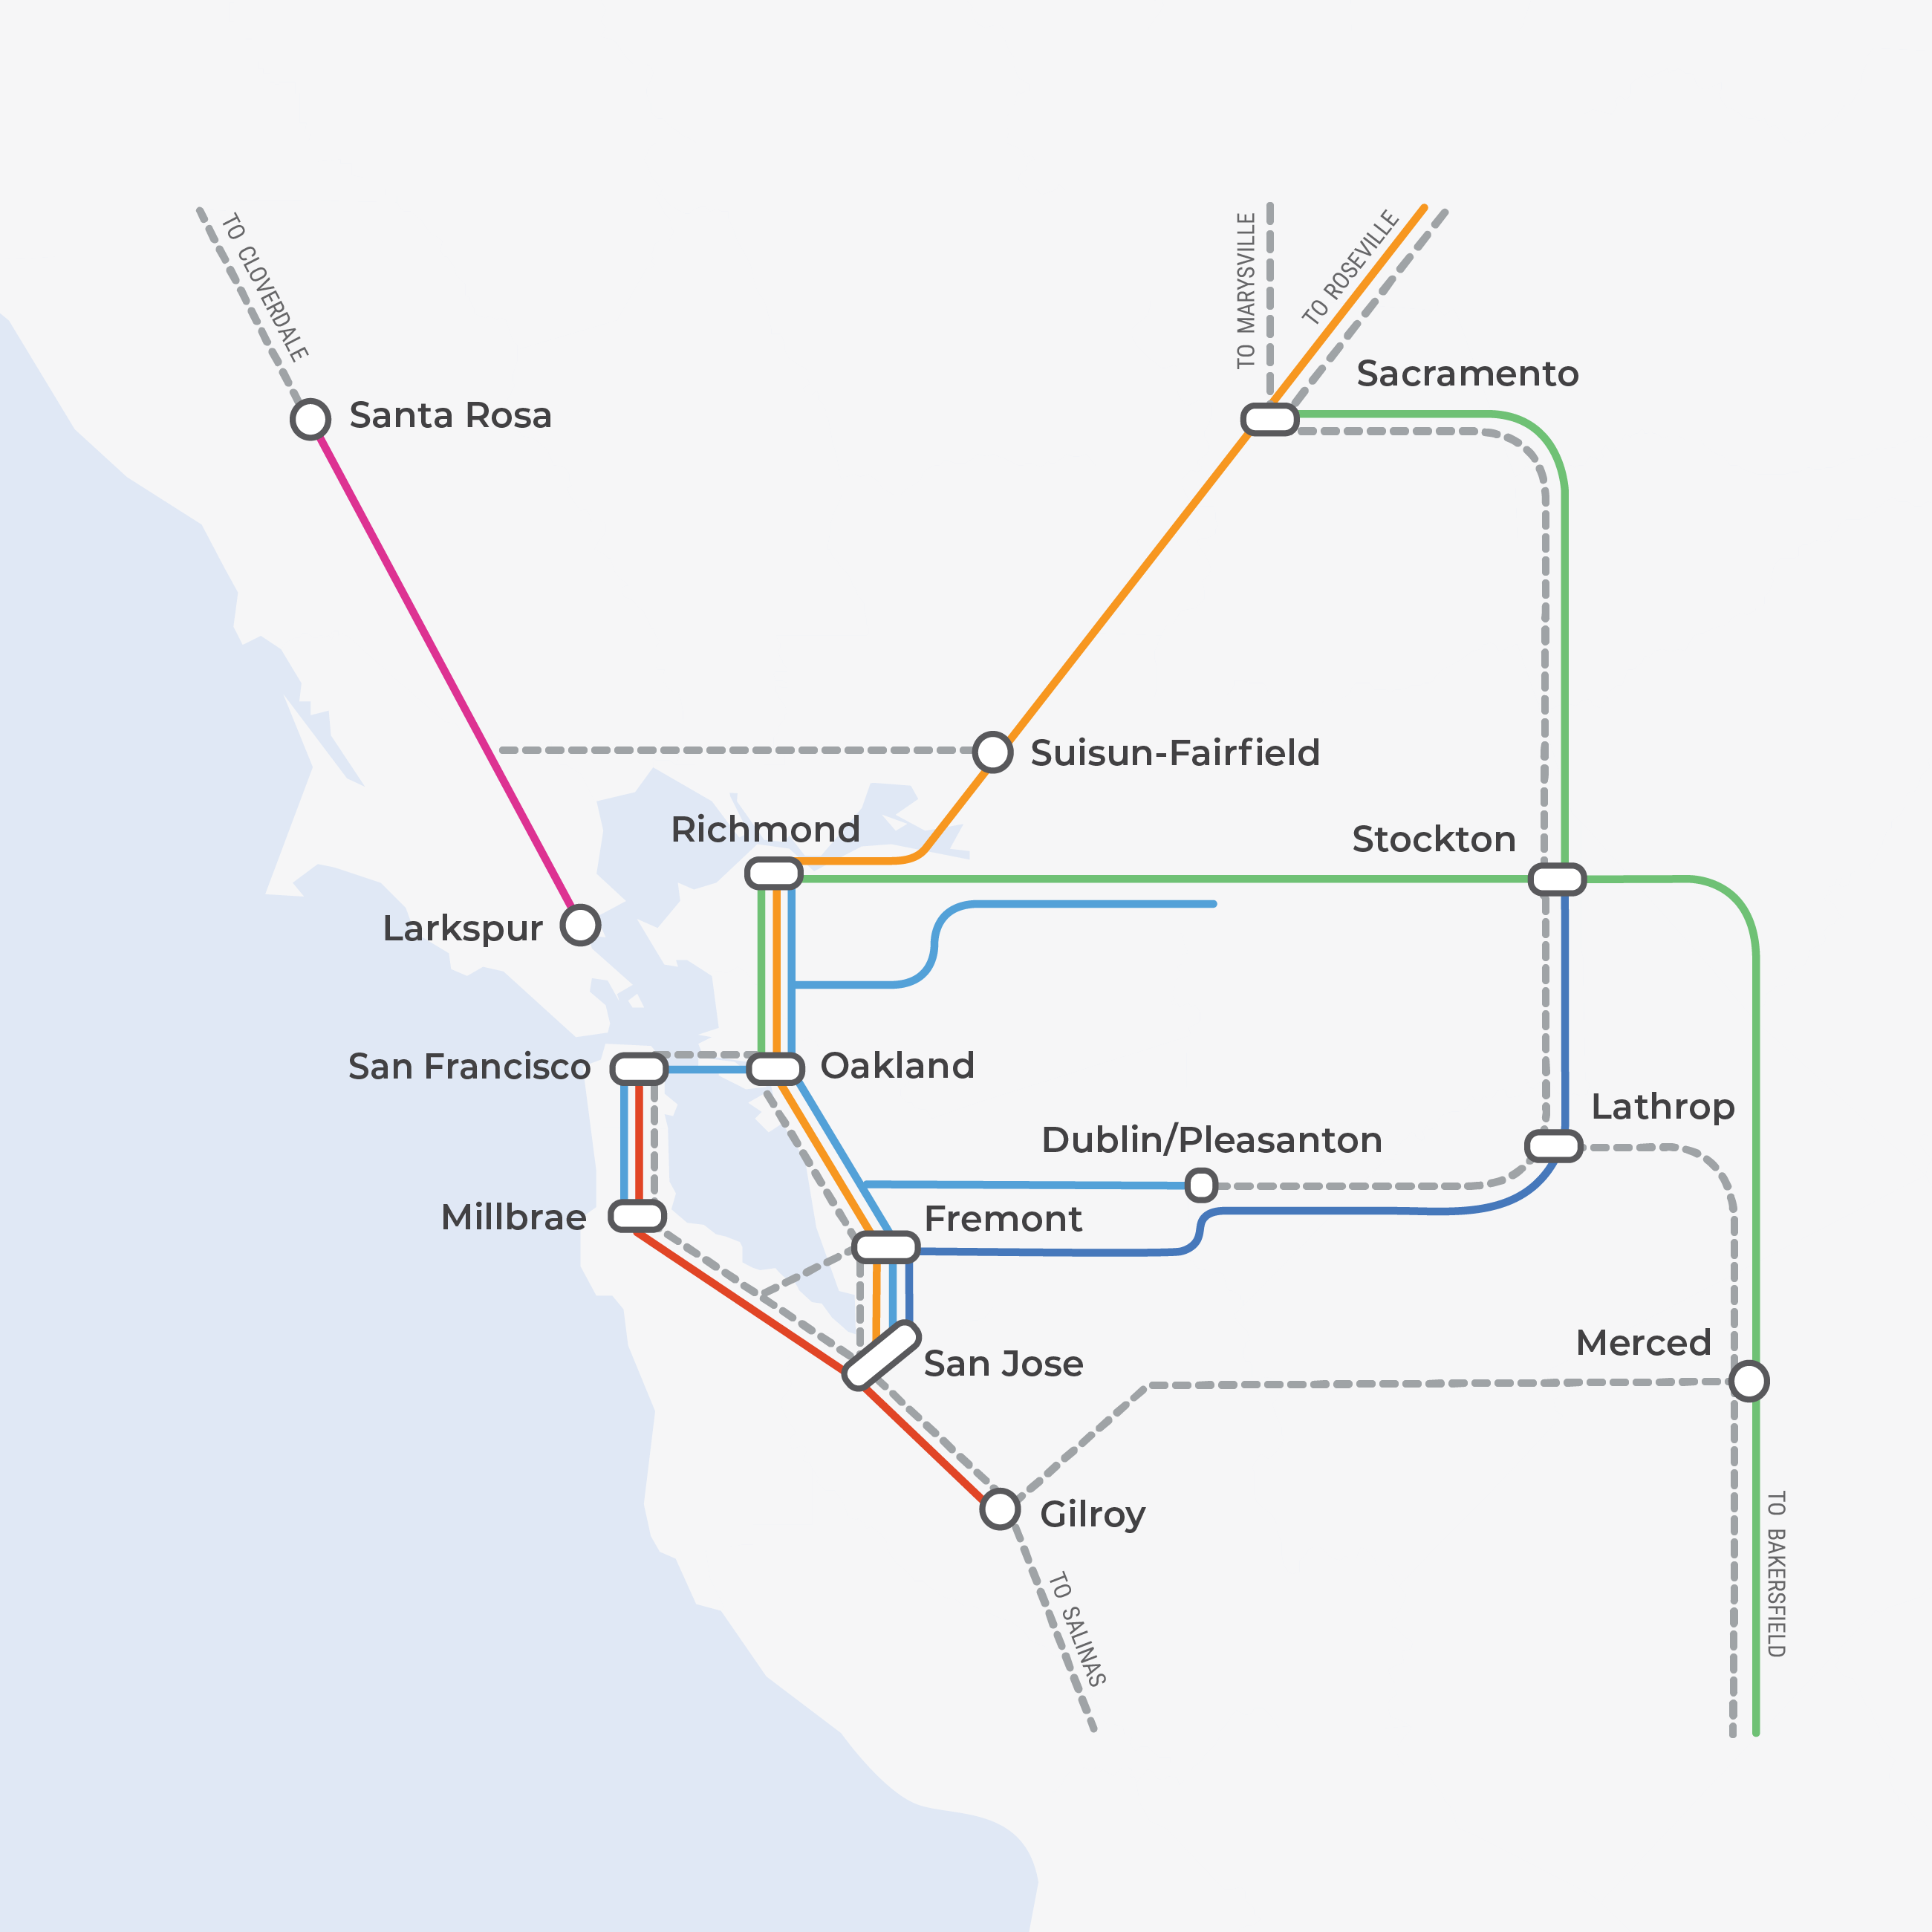 Mapa de la Megarregión del Norte de California